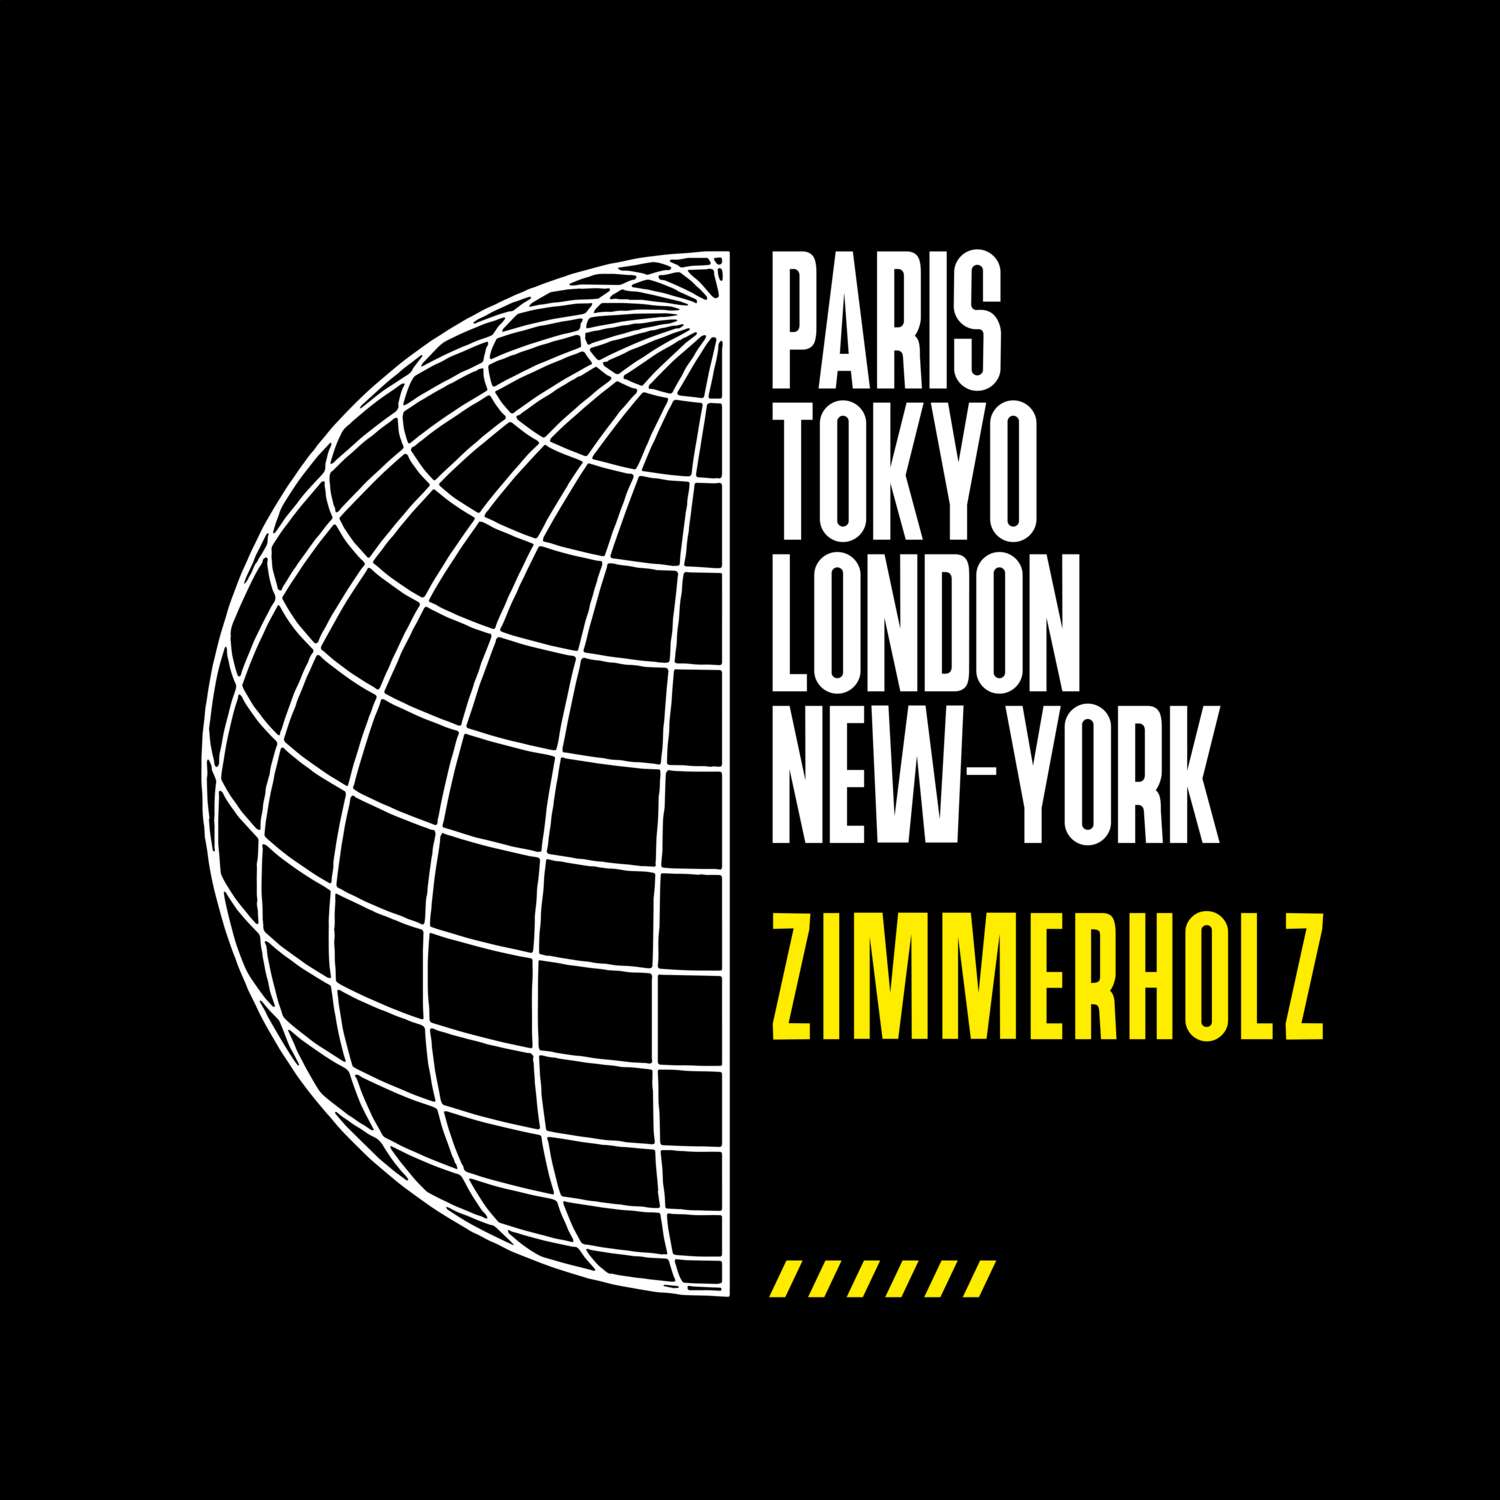 Zimmerholz T-Shirt »Paris Tokyo London«